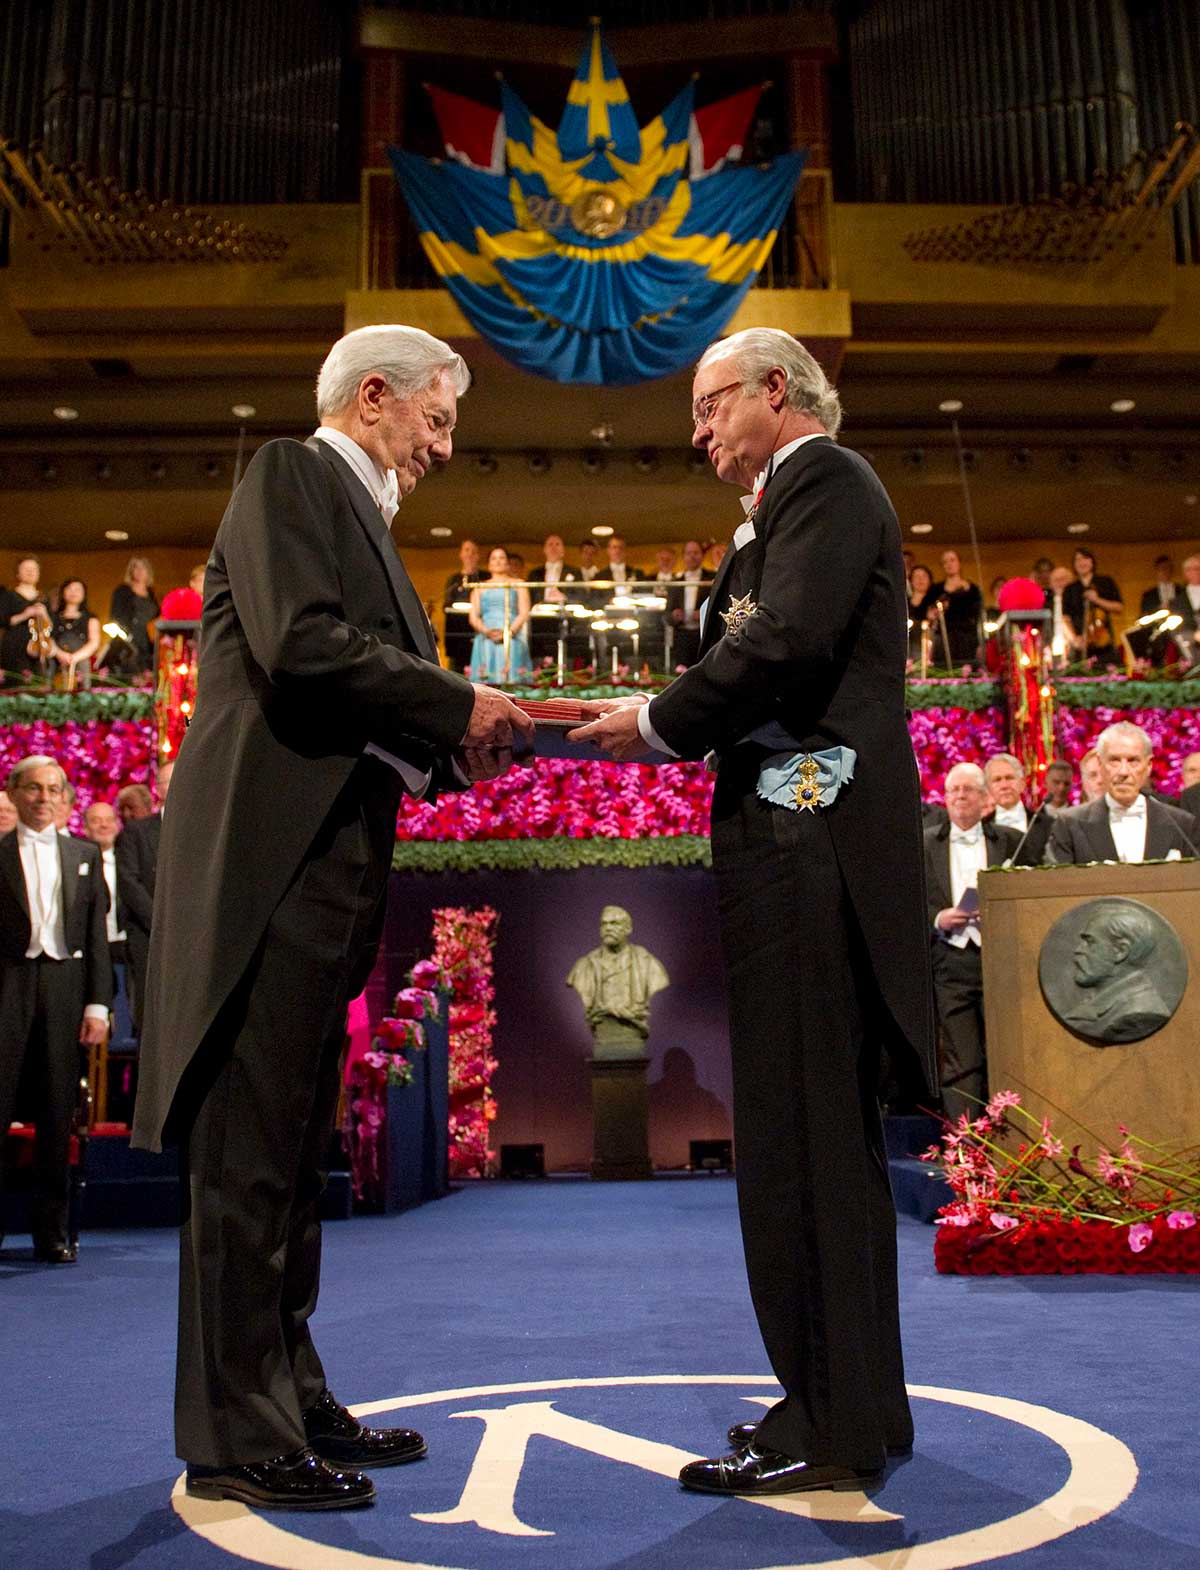 Foto del autor peruano Mario Vargas Llosa recibiendo el Premio Nobel de Literatura 2010